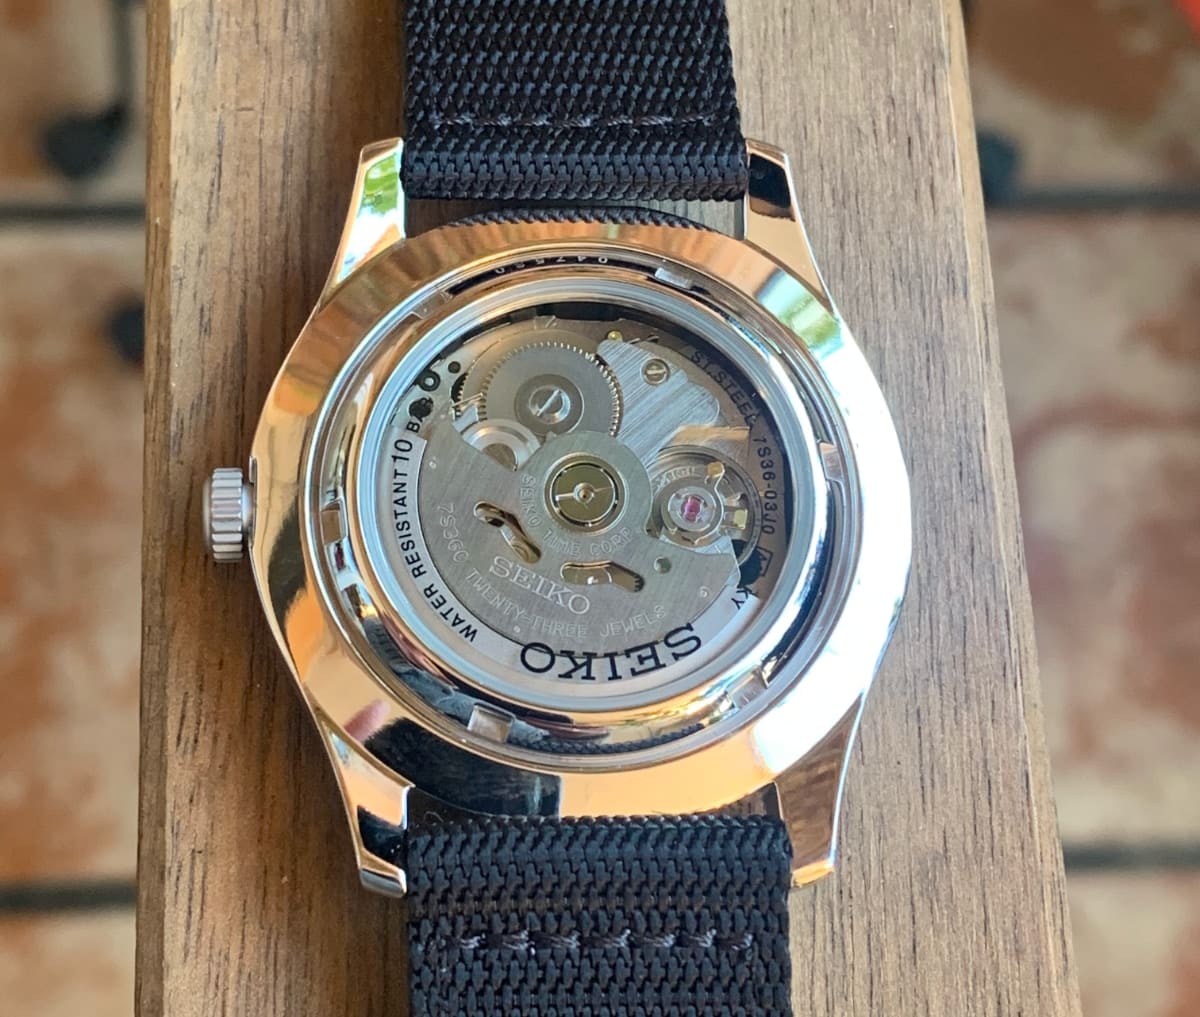 seiko SNZG15 reloj automatico: calibre visible ne la parte trasera del reloj automatico